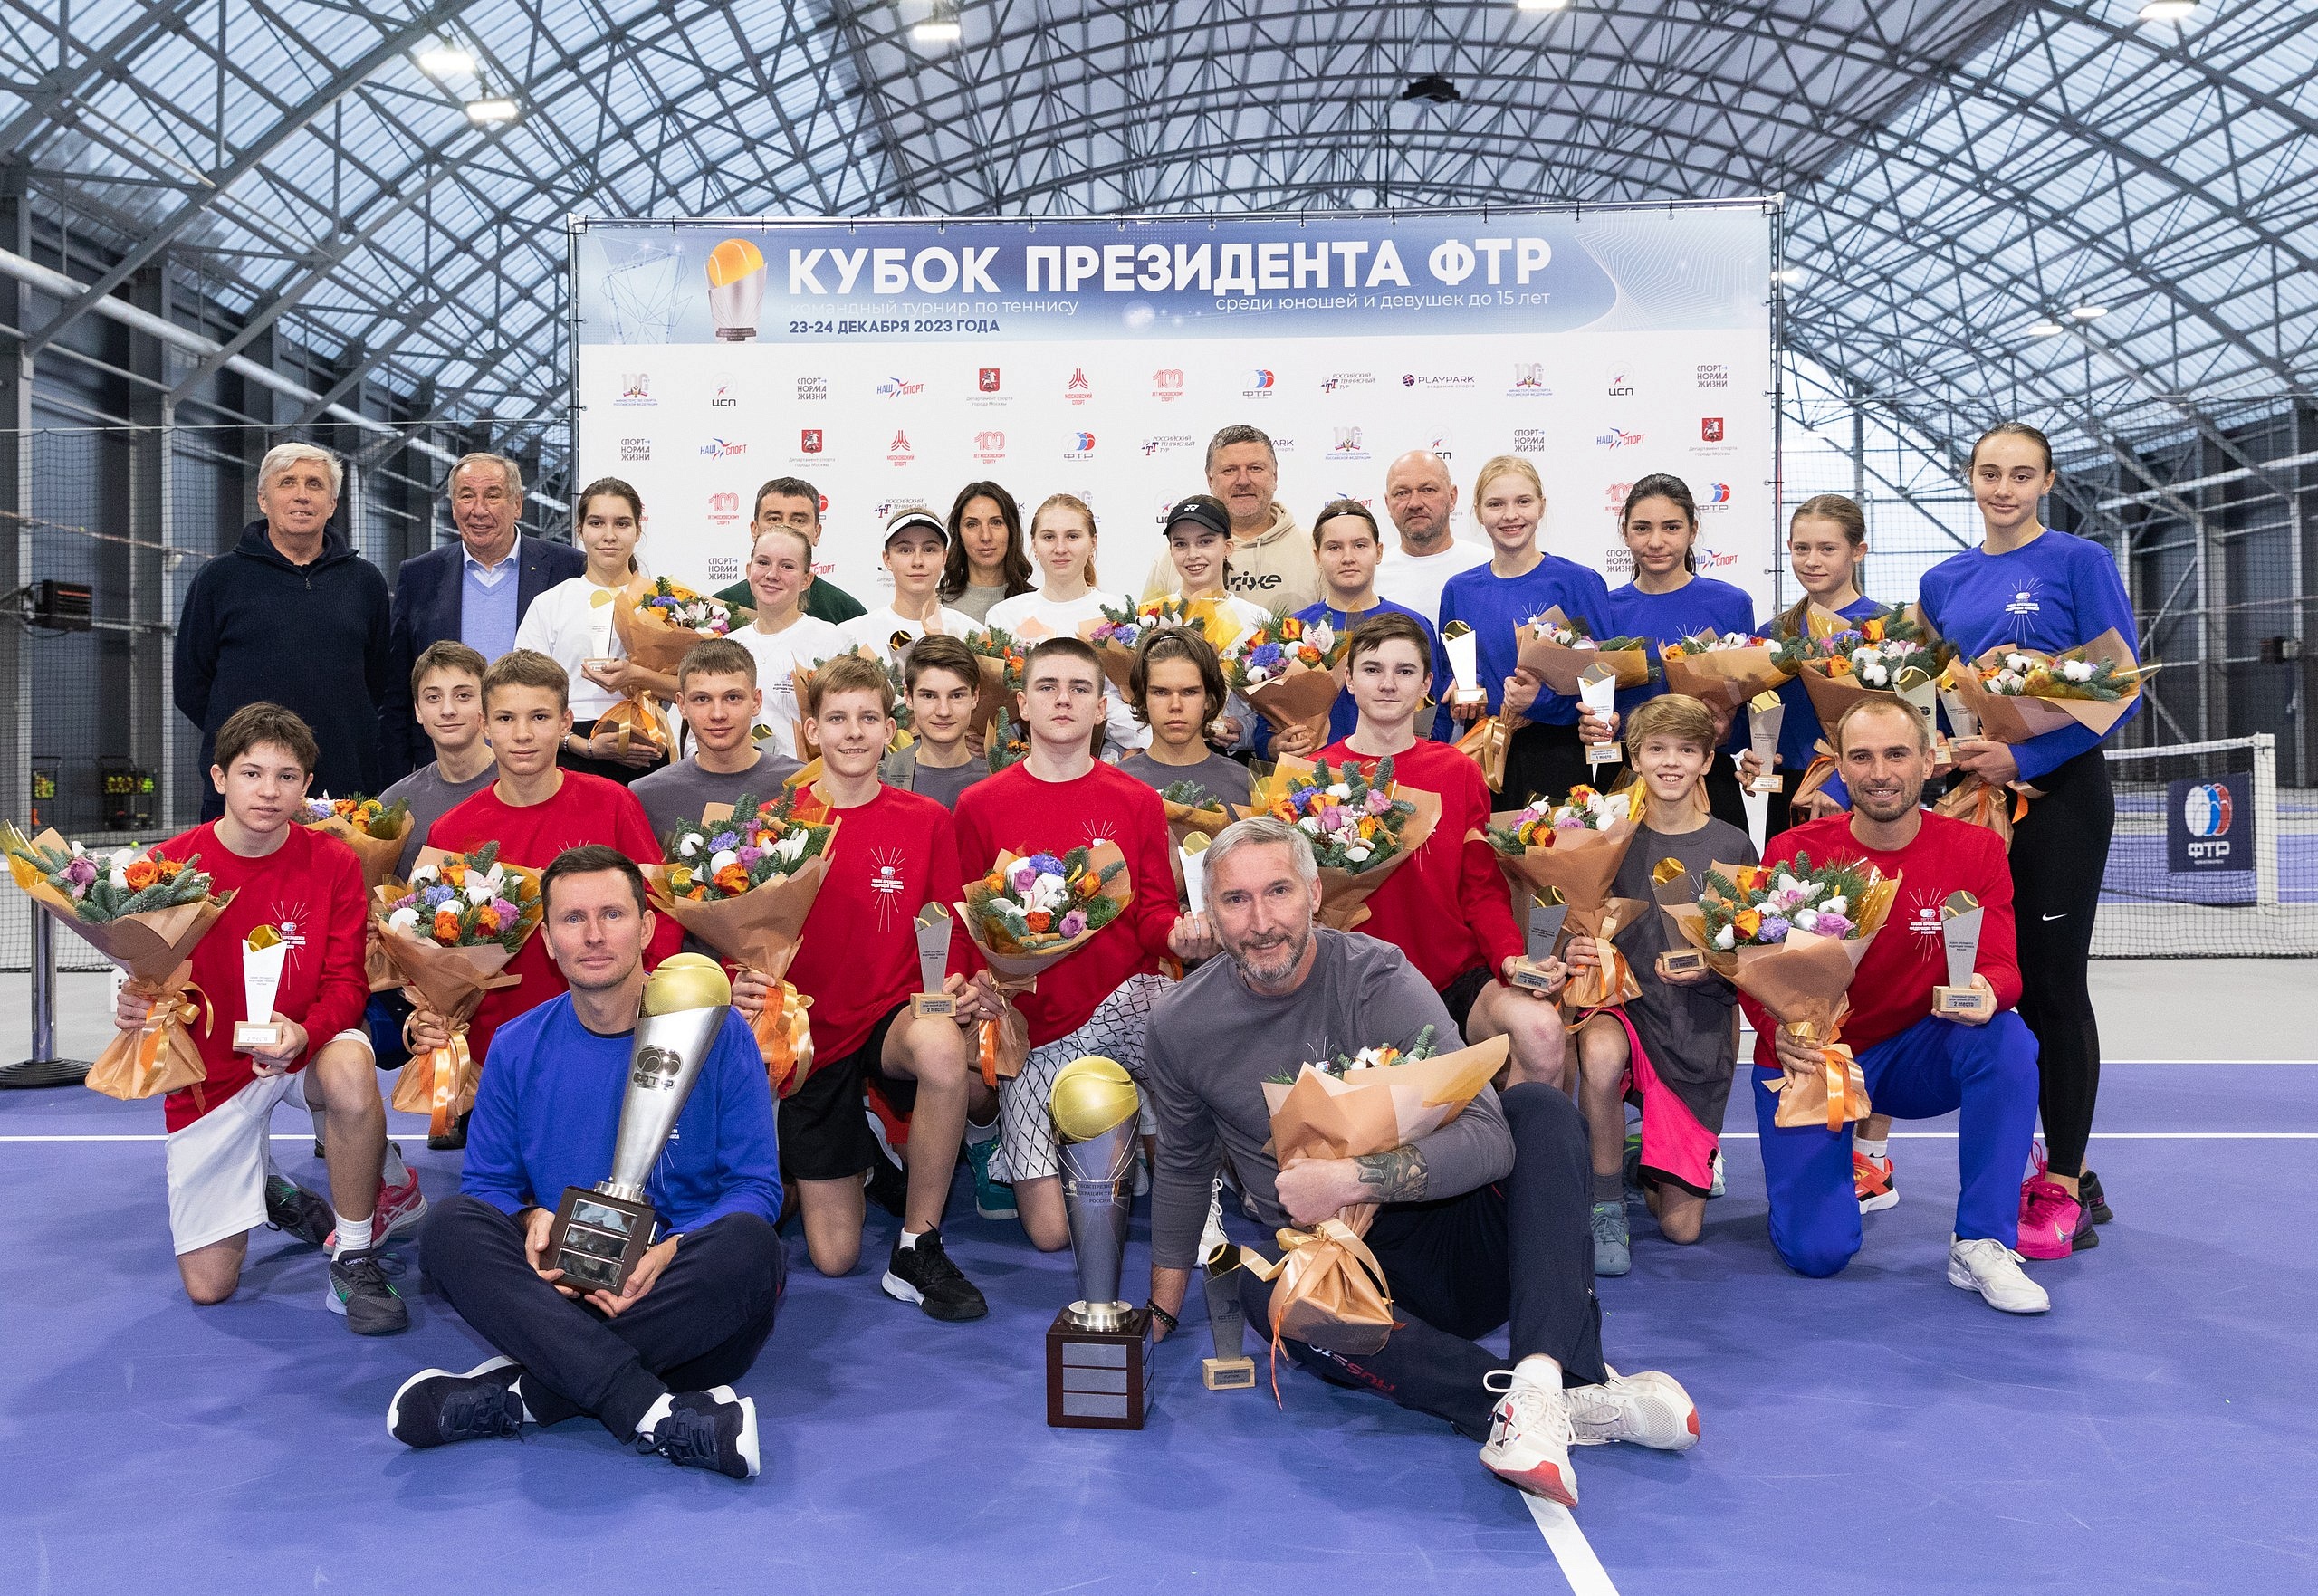 Теннис по-президентски: борьба за «Кубок президента ФТР» 